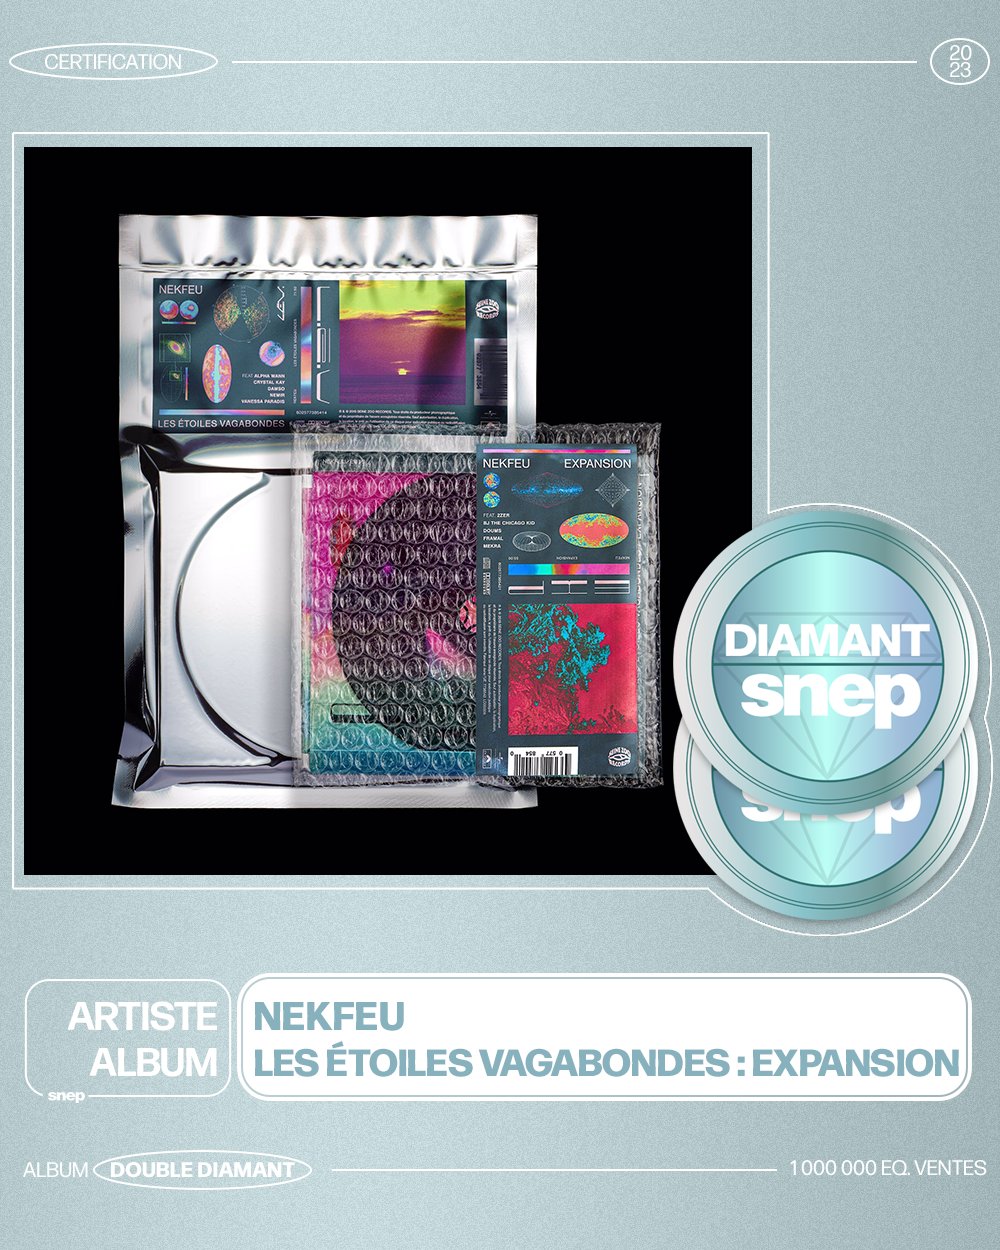 Le SNEP on X: L'album « Les étoiles vagabondes : expansion » de Nekfeu est  certifié Double Diamant ! 💎💎 1 000 000 équivalents ventes 📈 Bravo ! 👏   / X